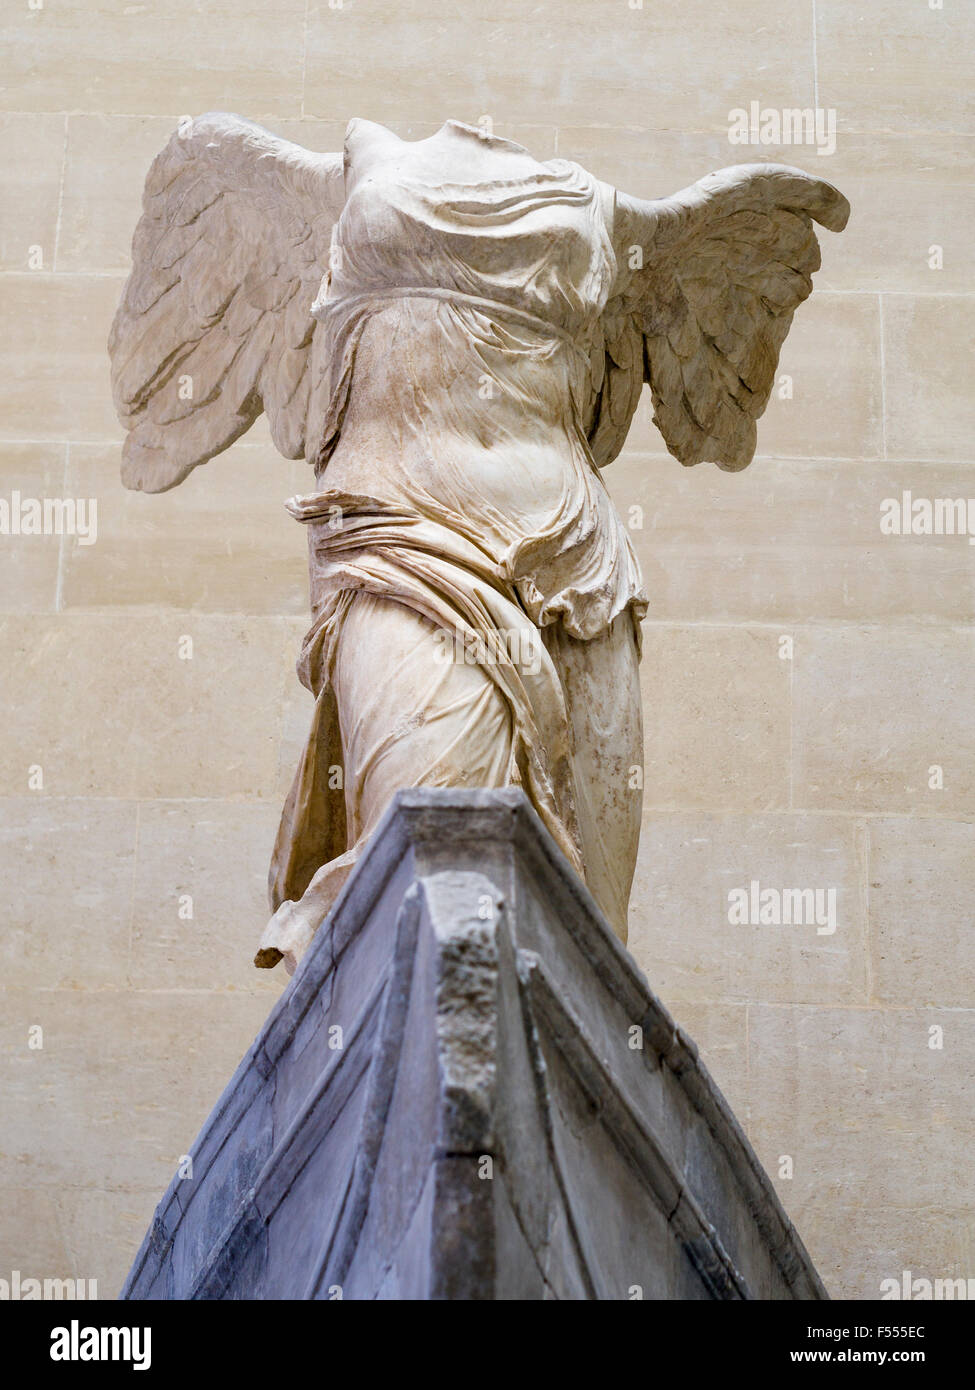 Marmor Skulptur Winged Sieg von Samothrace von unten. 2. Jahrhundert v. Chr. Skulptur von der griechischen Göttin Nike oder Sieg Funda Stockfoto